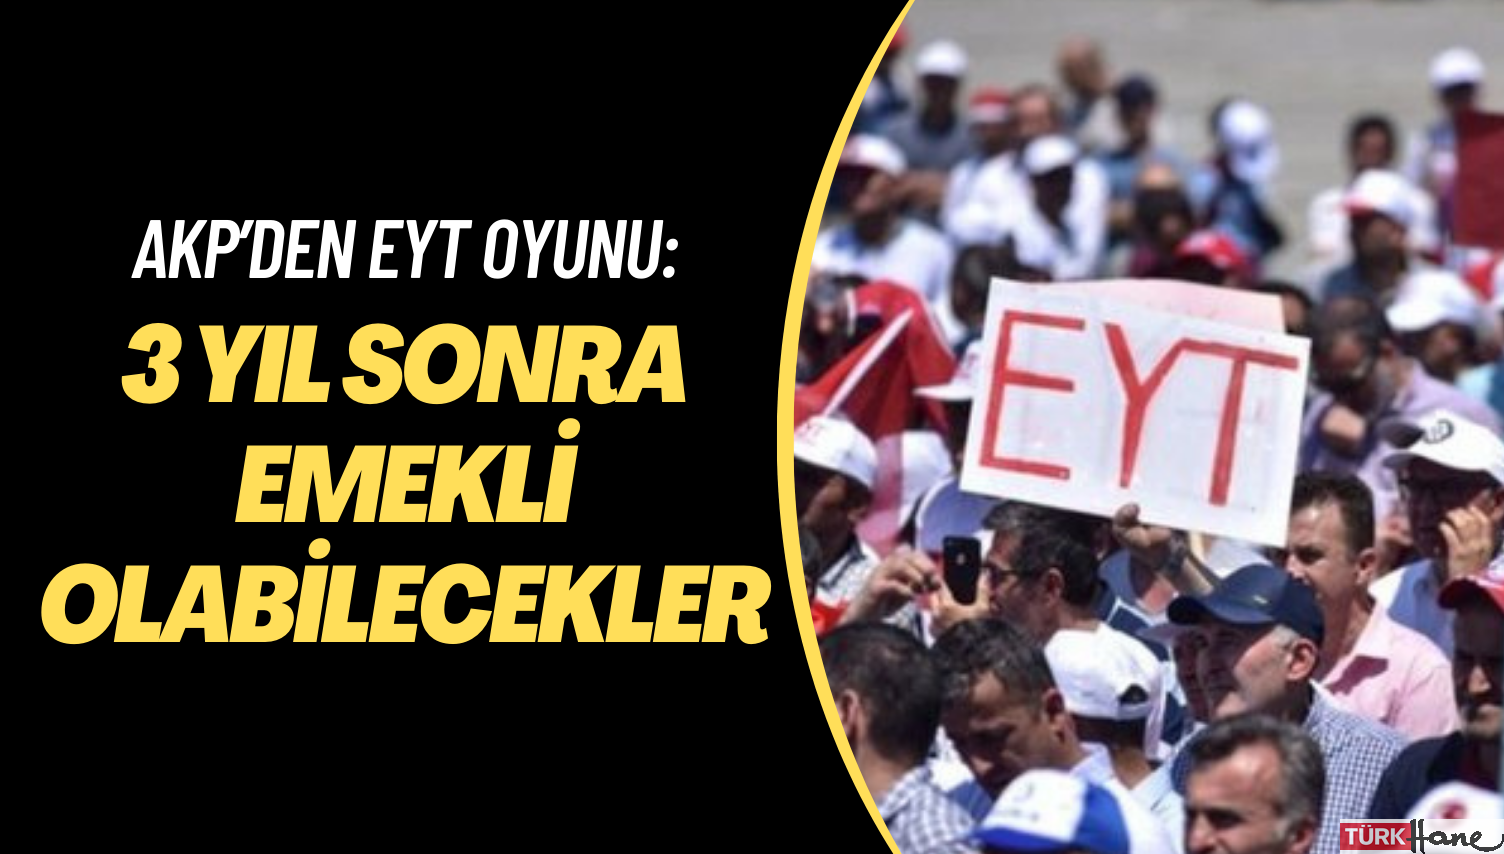 AKP’den EYT oyunu: 3 yıl sonra emekli olabilecekler